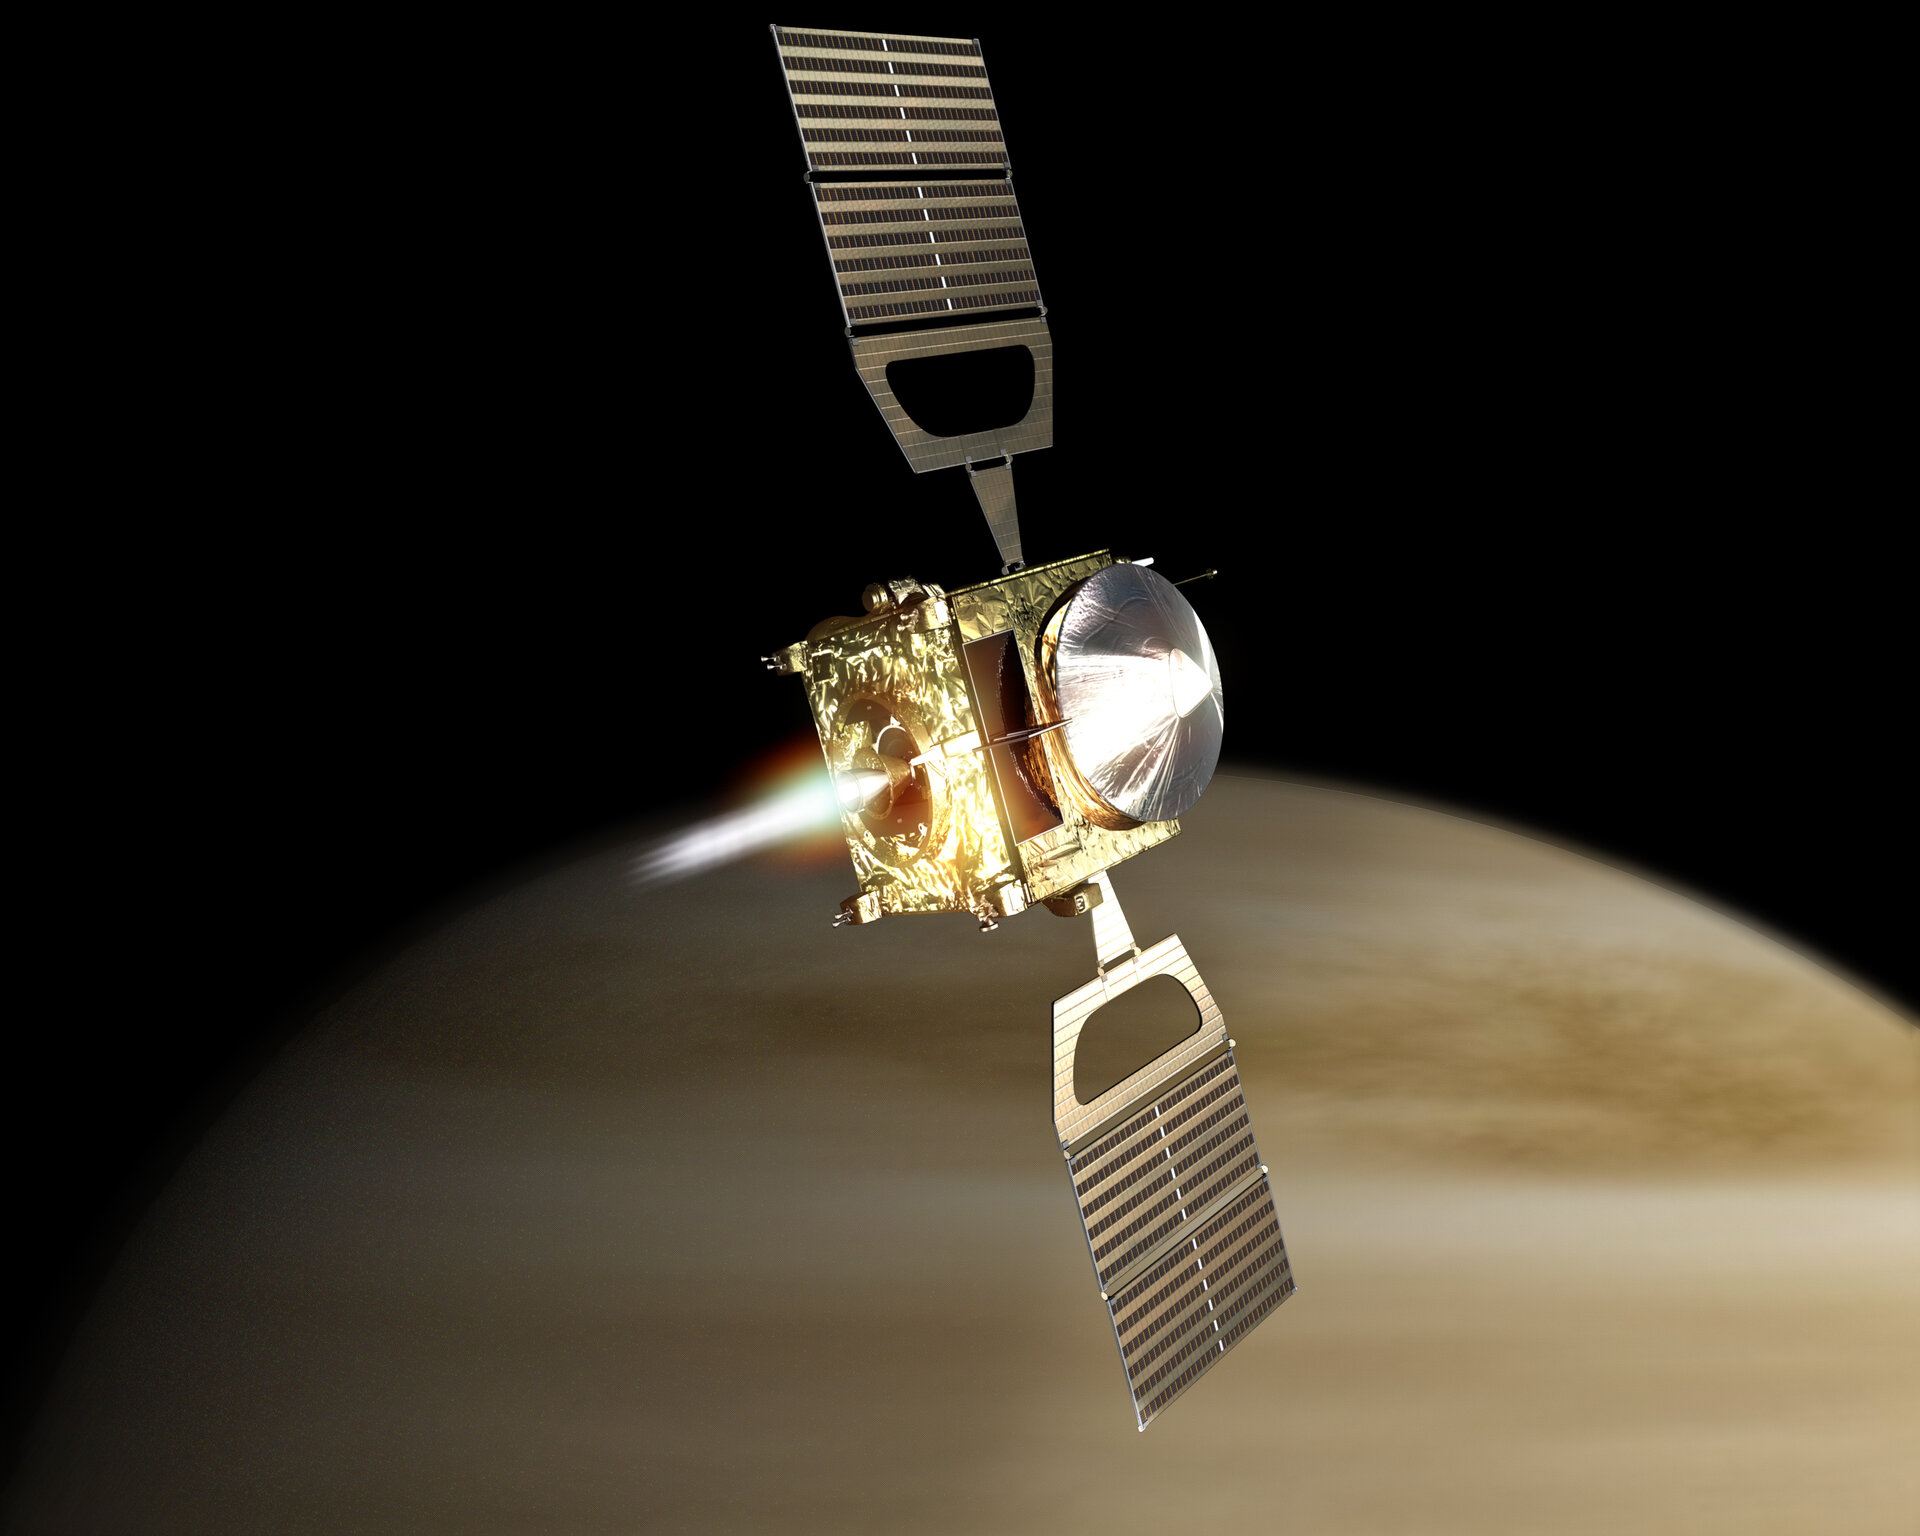 Vue d'artiste de l'injection de Venus Express en orbite vénusienne